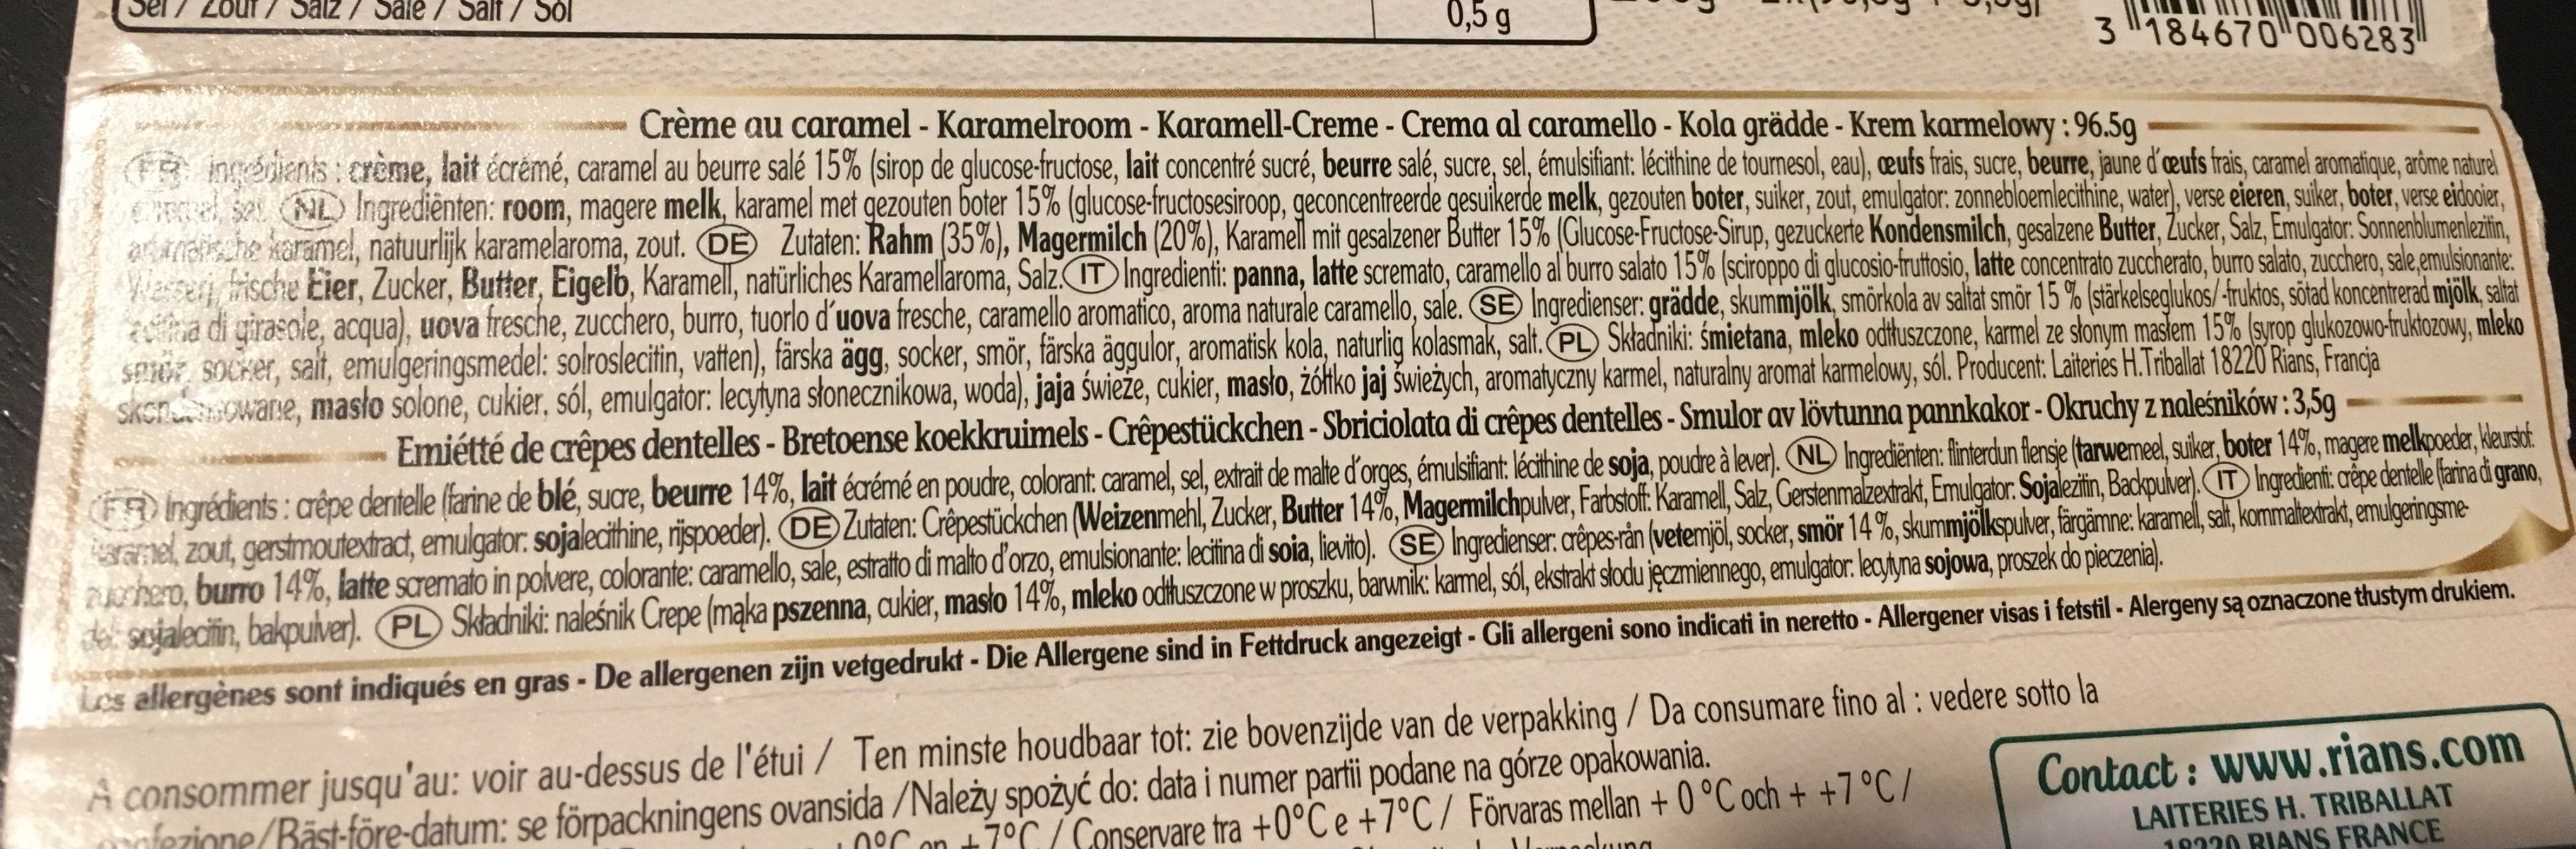 Rians La Crème Au Caramel Et Sa Crêpe - Ingredients - fr